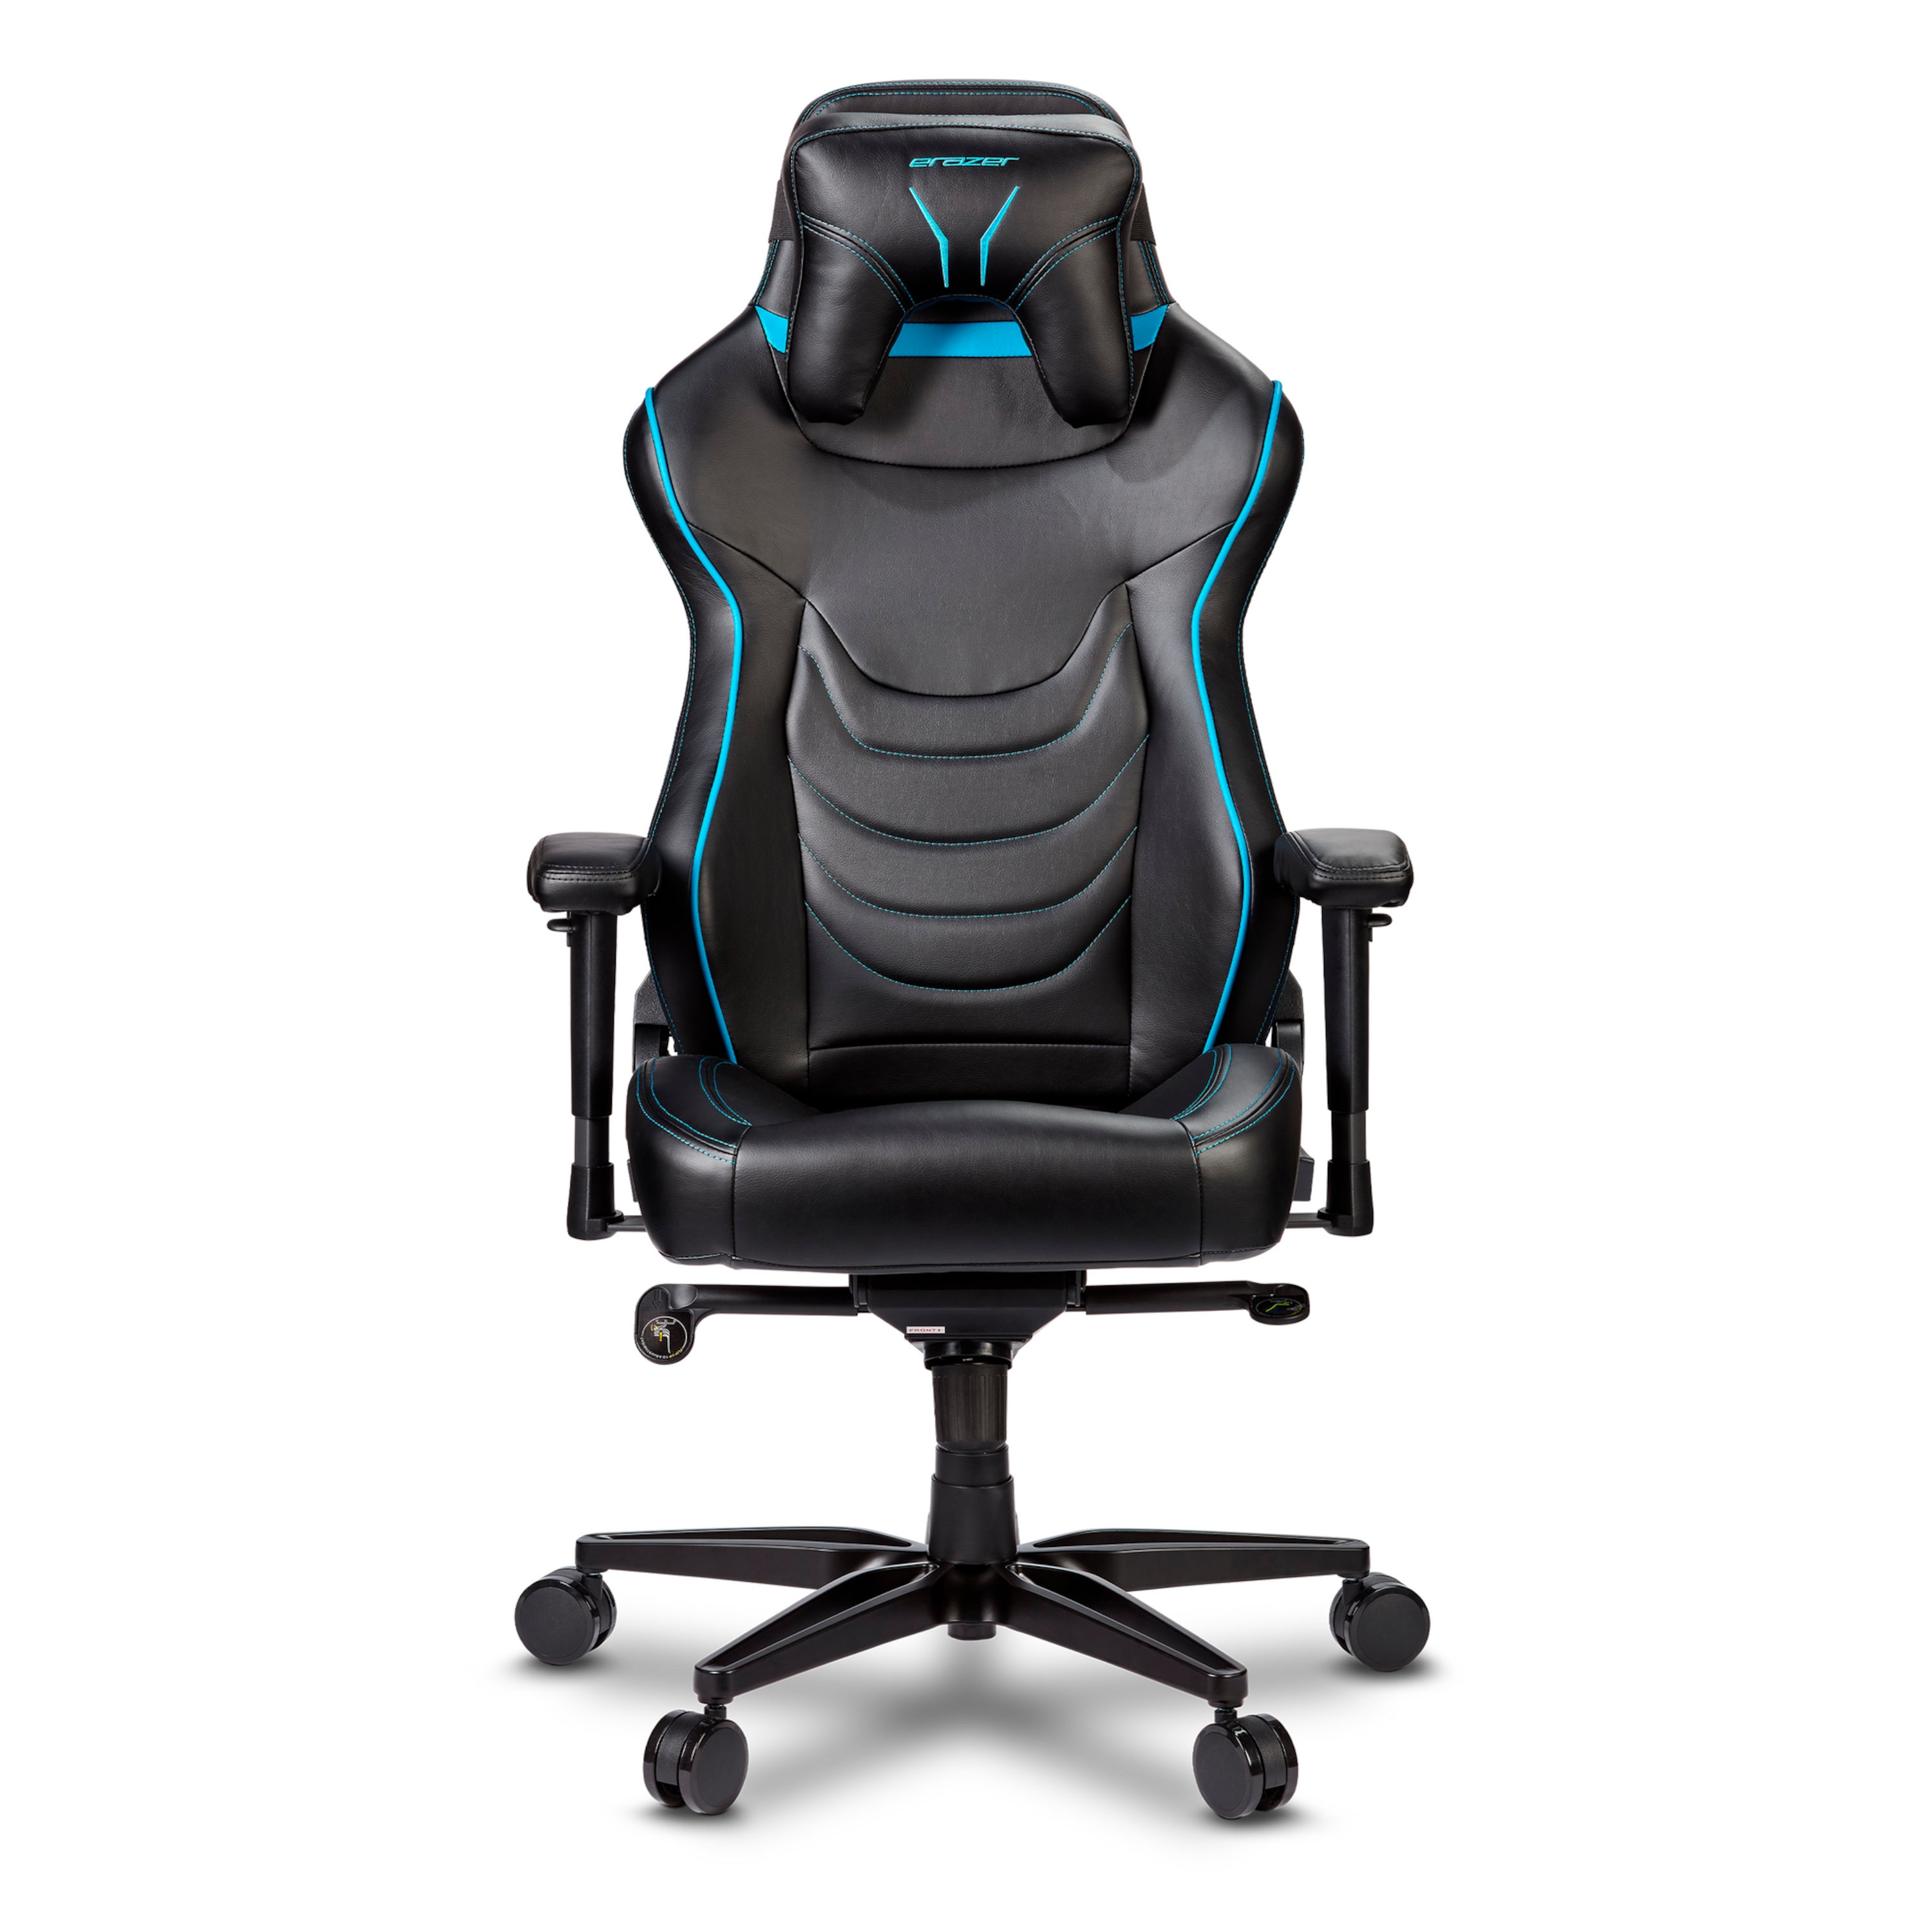 ERAZER Druid X10 Gaming stoel | Hoog zitcomfort | Sportieve look | Afneembaar hoofdkussen (Refurbished)